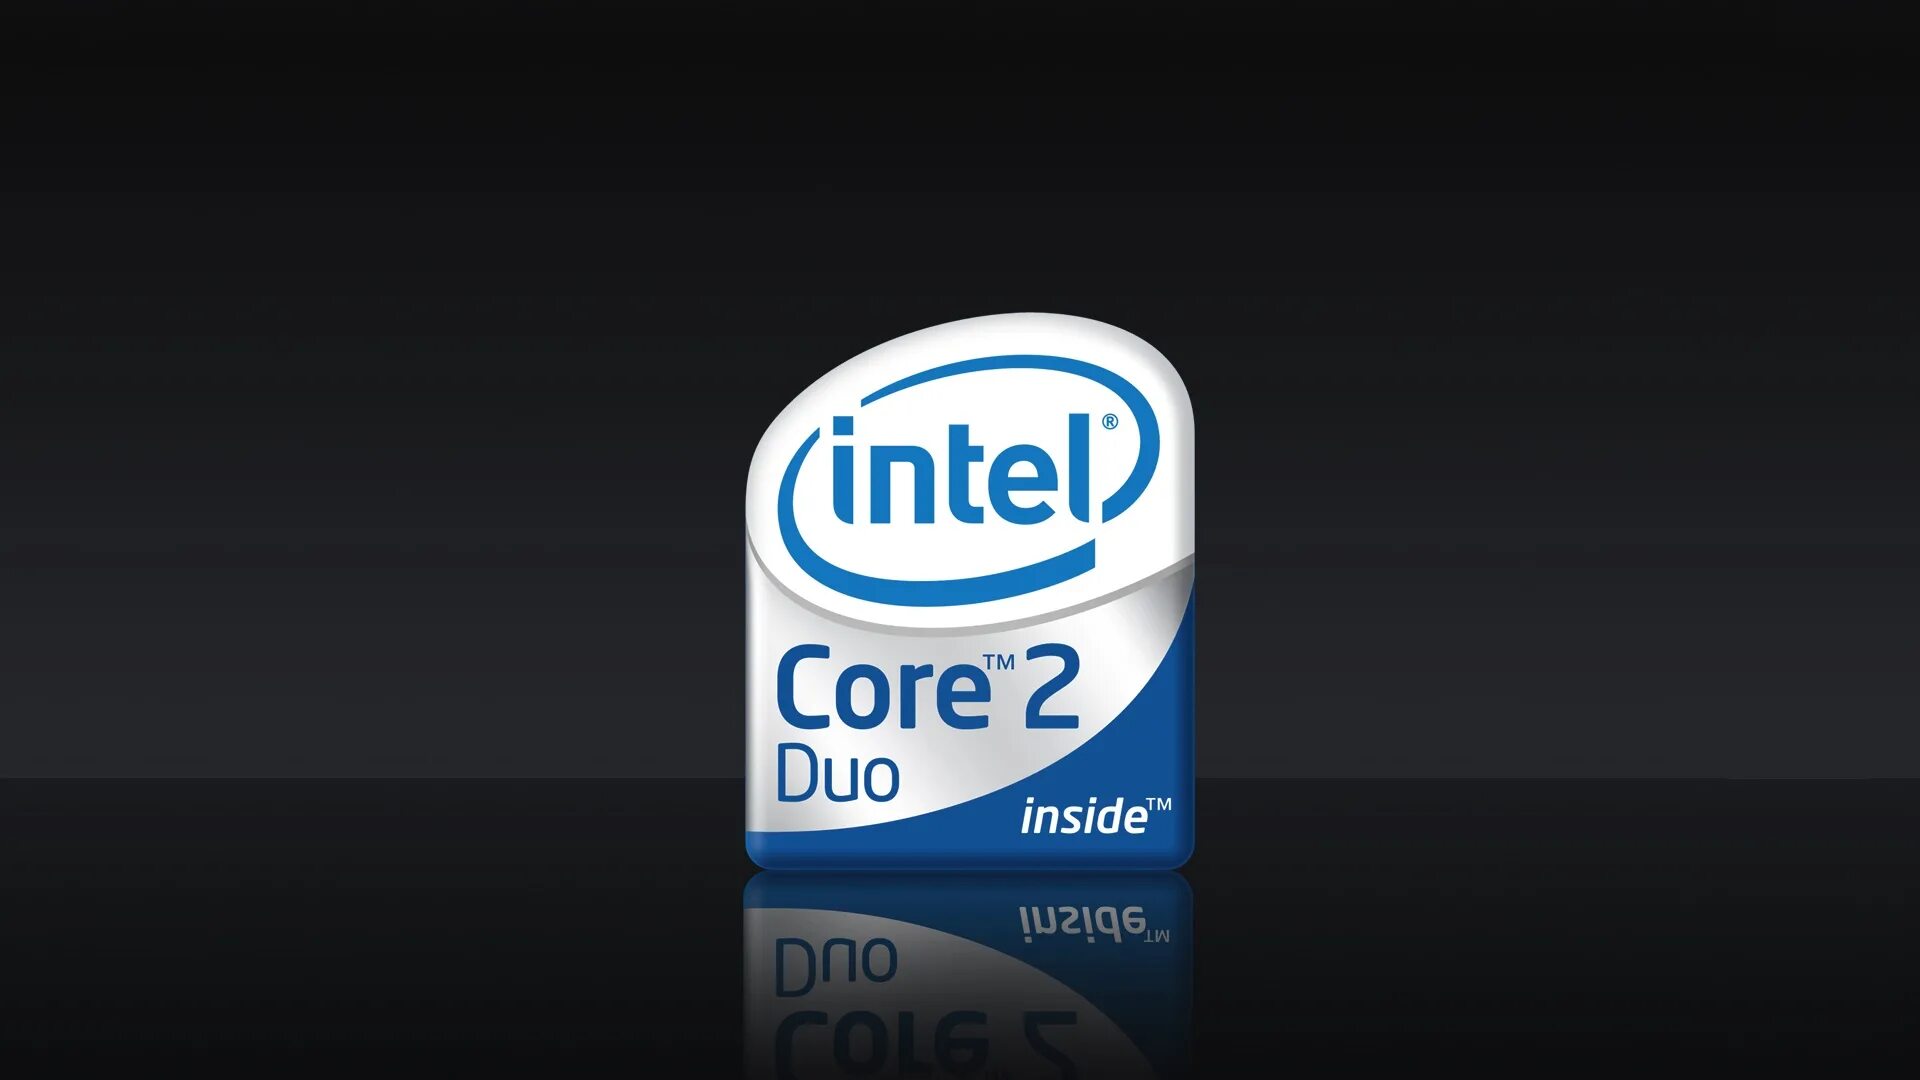 Интел Core 2 Duo. Intel Core 2 Duo logo. Intel Core 2 Duo inside. Интел пентиум логотип 2 Core. Интел сор